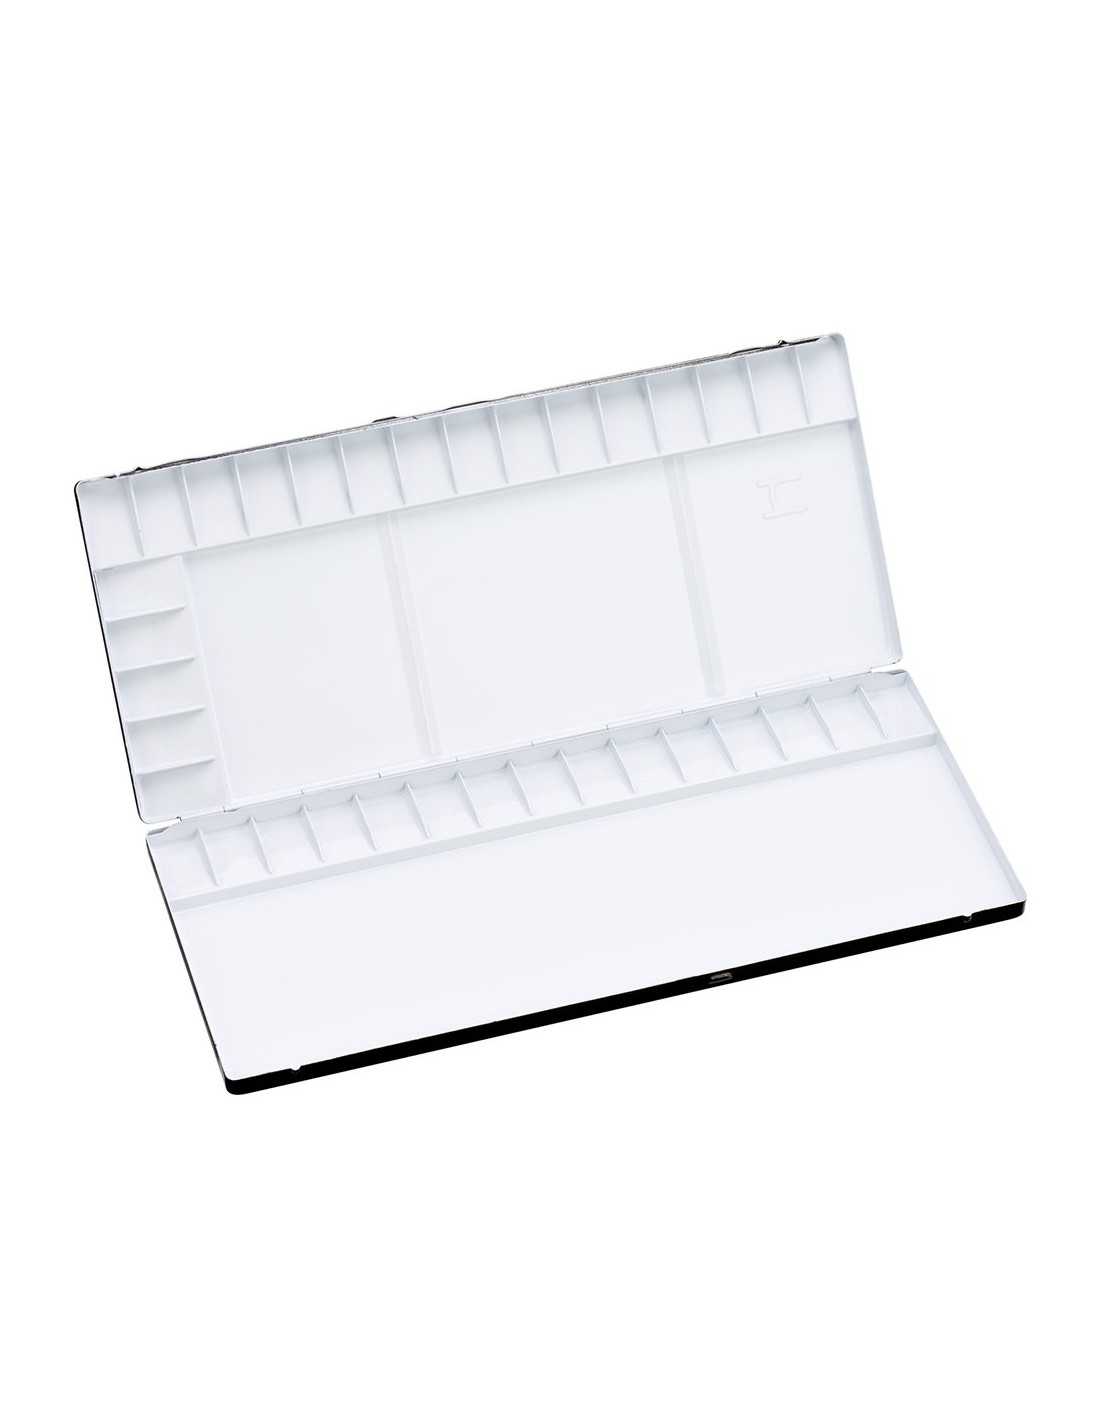 Caja/Paleta de metal esmaltada blanca con 16 pocillos